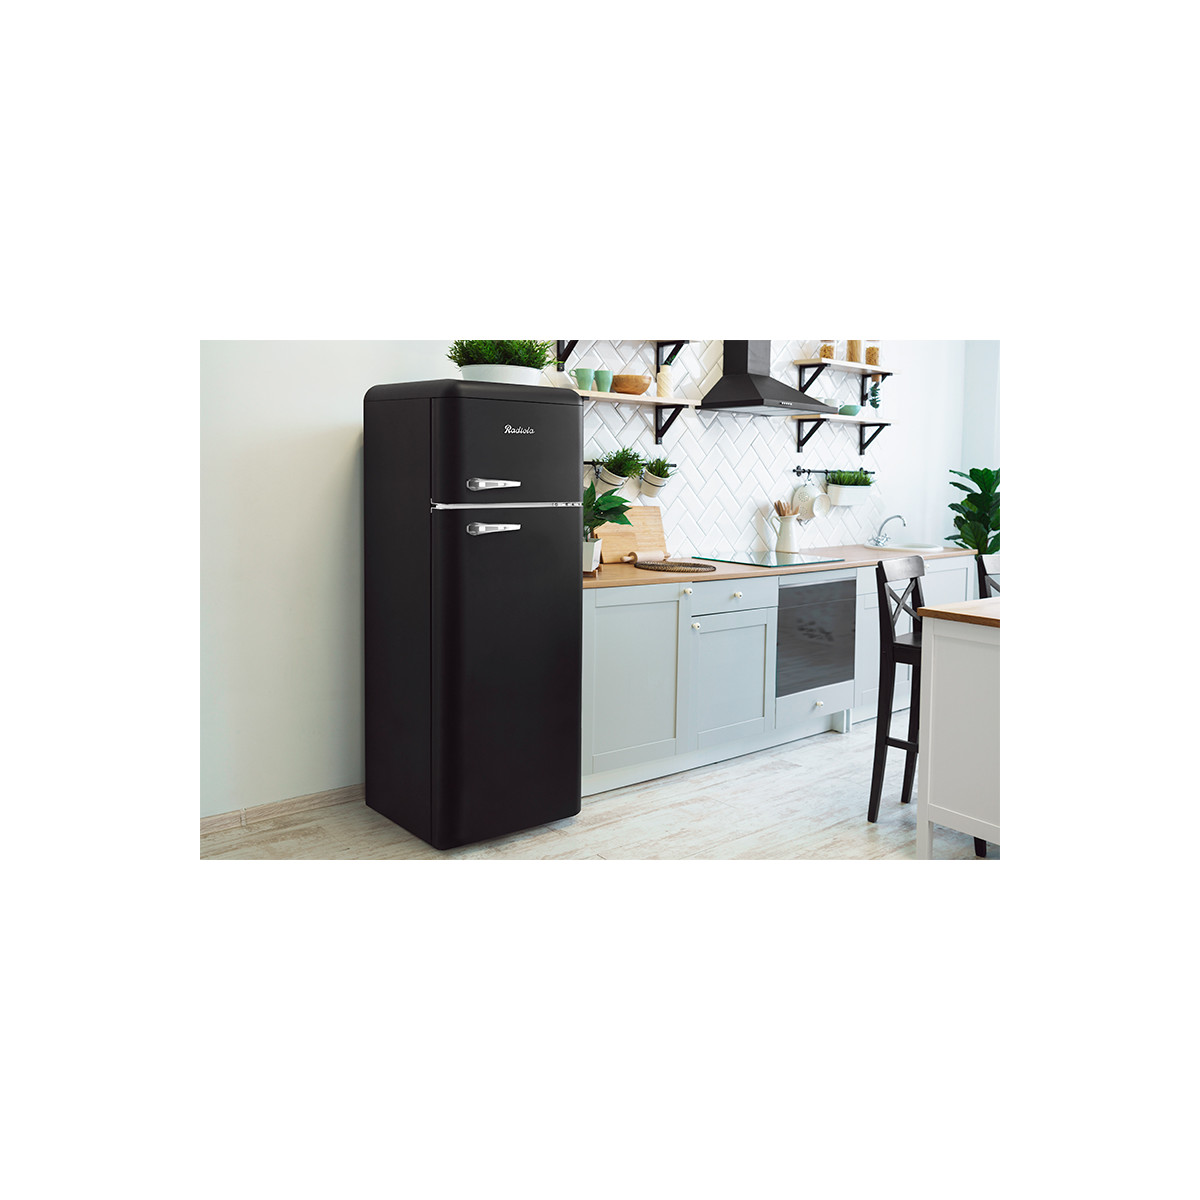 Réfrigérateur congélateur haut RADIOLA RARDP210BV Pas Cher 